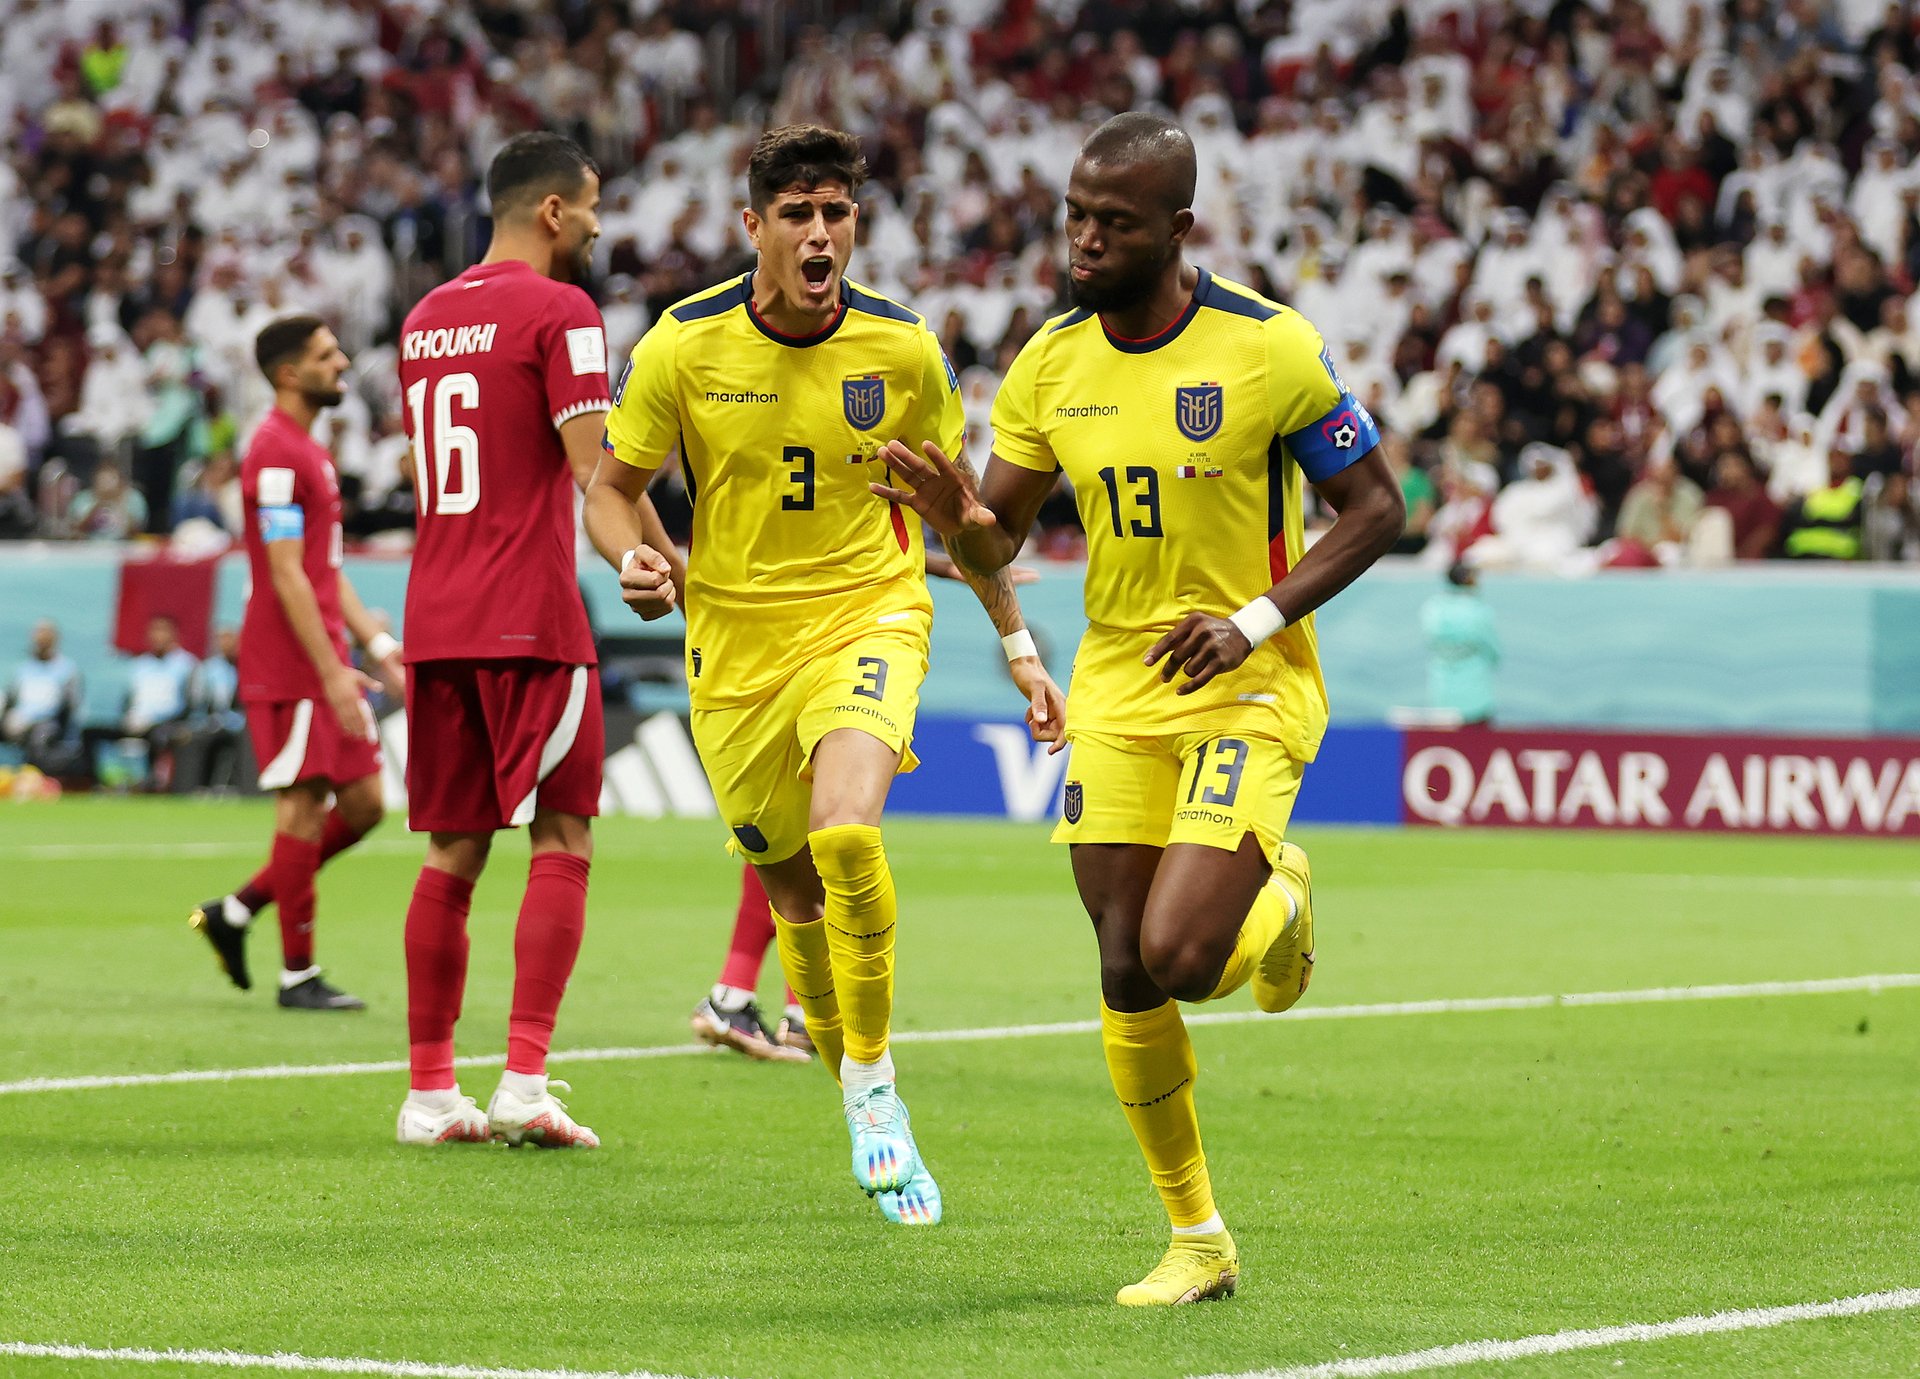 Първият гол на Мондиала реализира Енер Валенсия от Еквадор, който бързо бързо върна домакинския отбор в реалността.